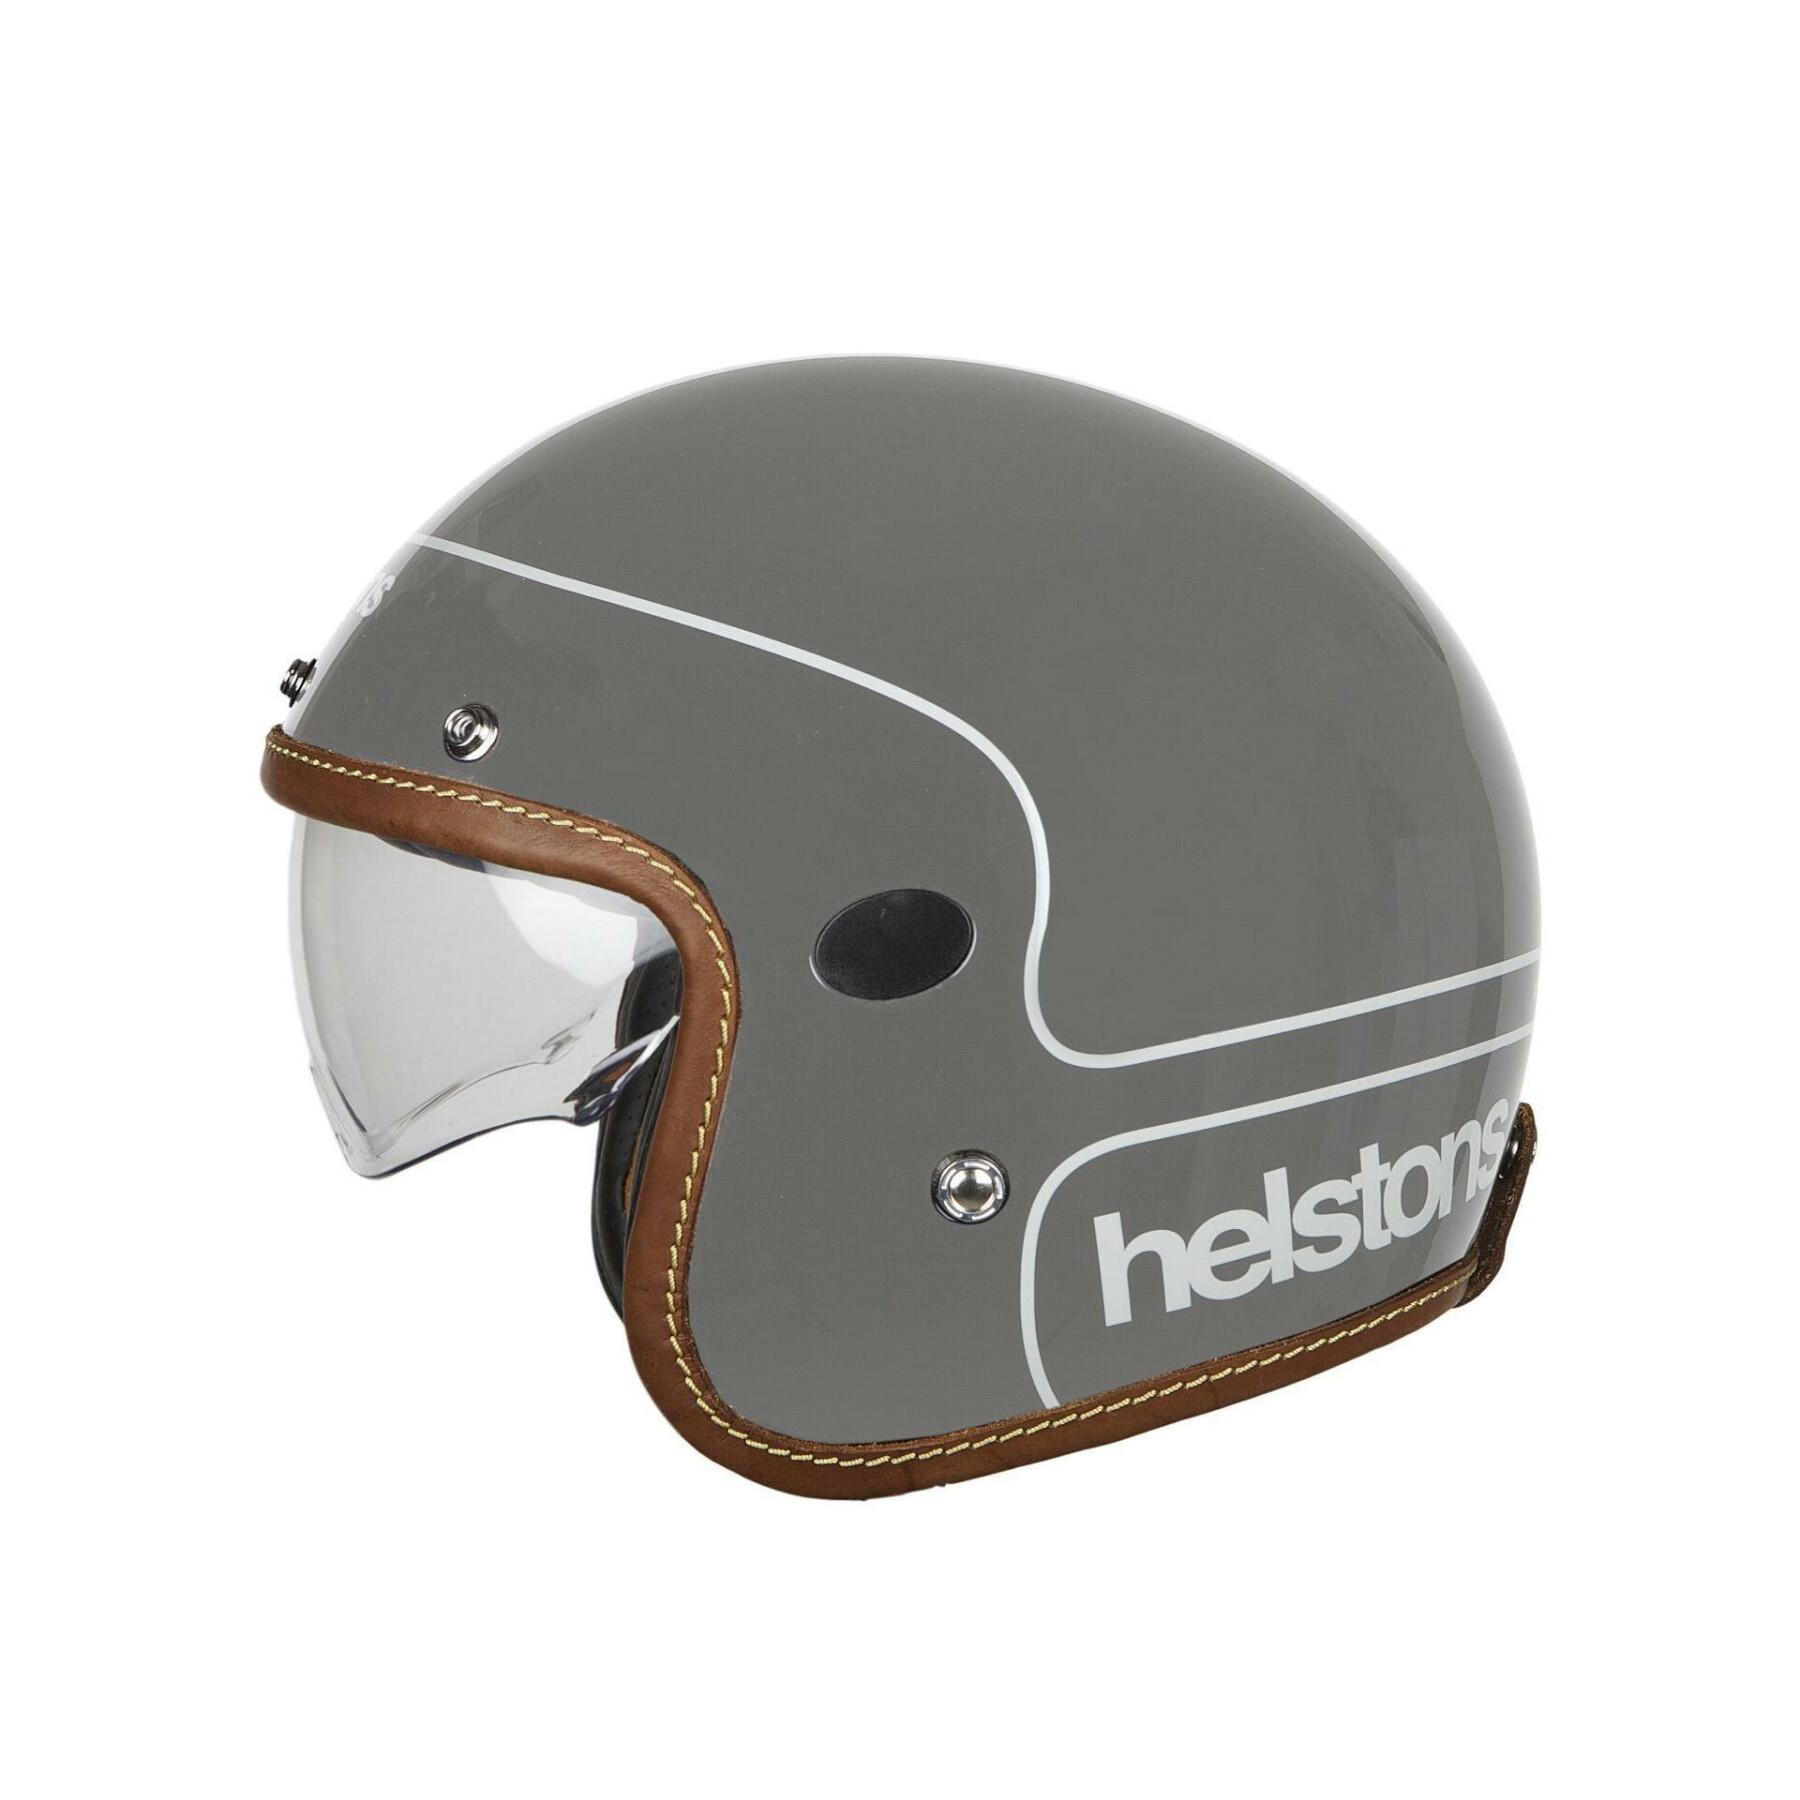 Koolstofvezel helm Helstons corporate helmet